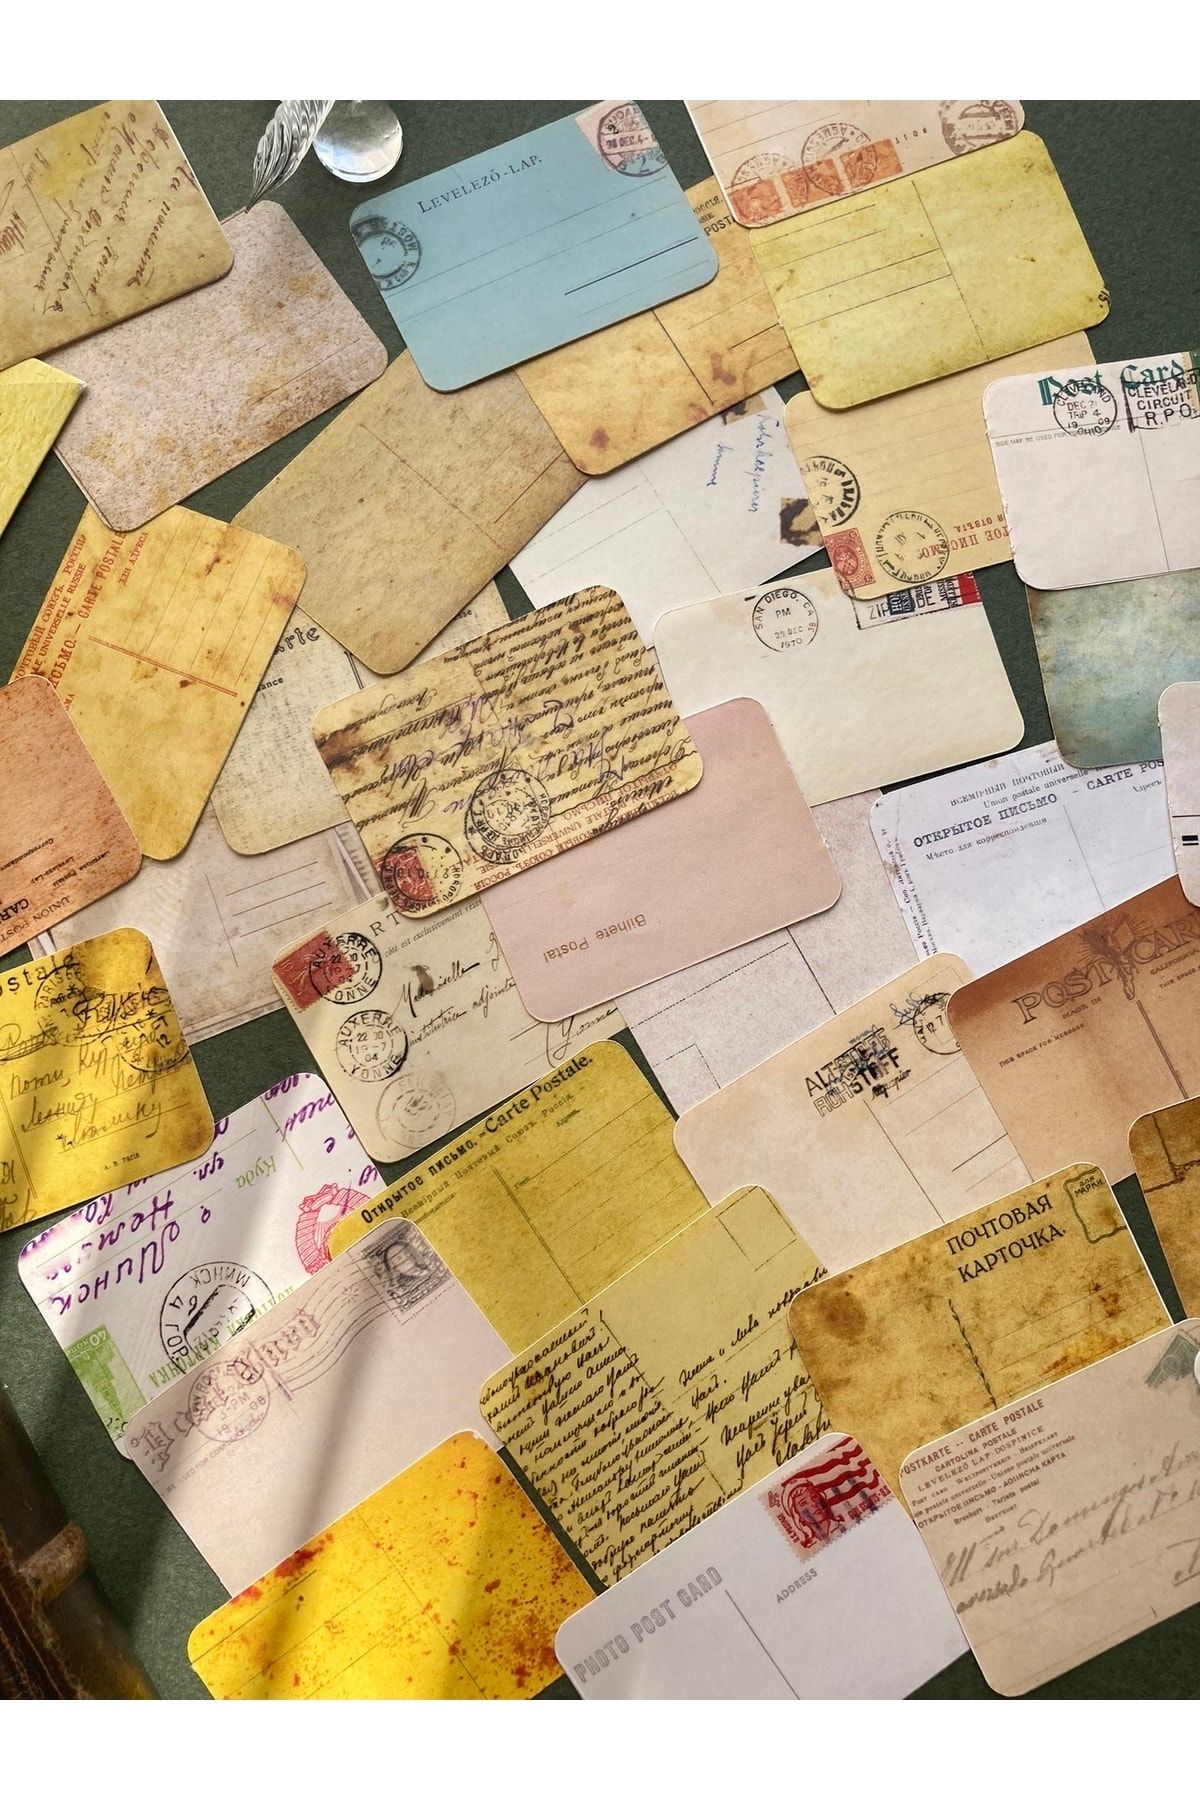 Hume Craft Kartpostal Mektup Temalı Vintage Sticker Seti Ajanda Planlayıcı Bullet Journal Scrapbook Için Uygun